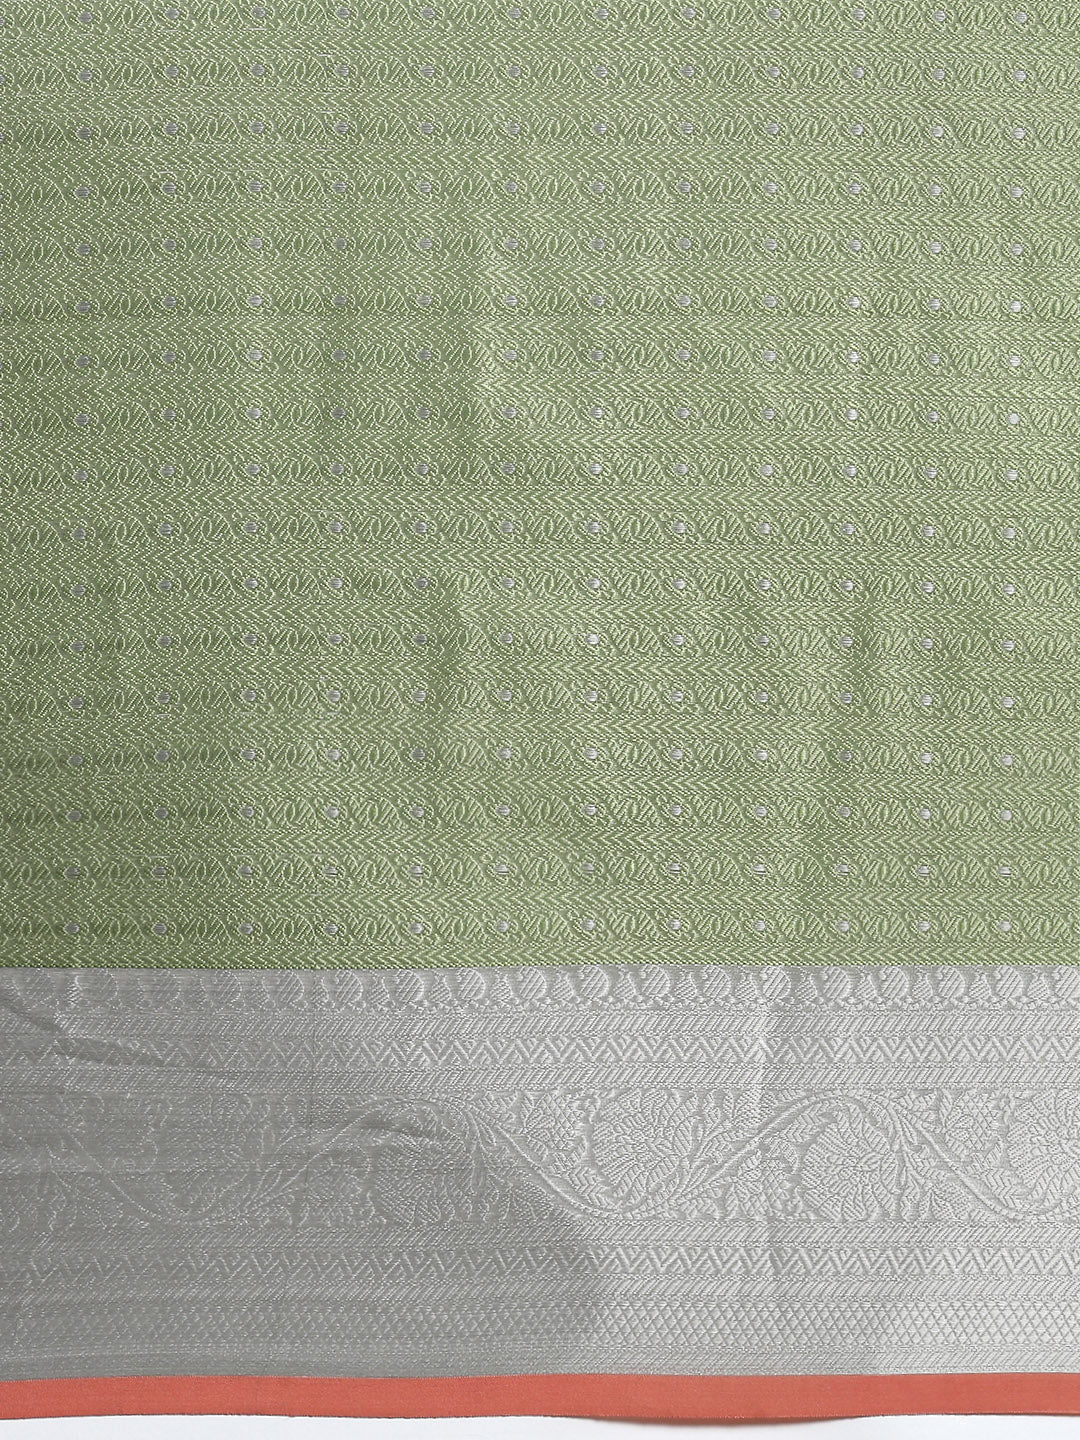 Semi Kora Cotton Allover Design Saree Green with Silver Zari Border SKC03-Zoom view